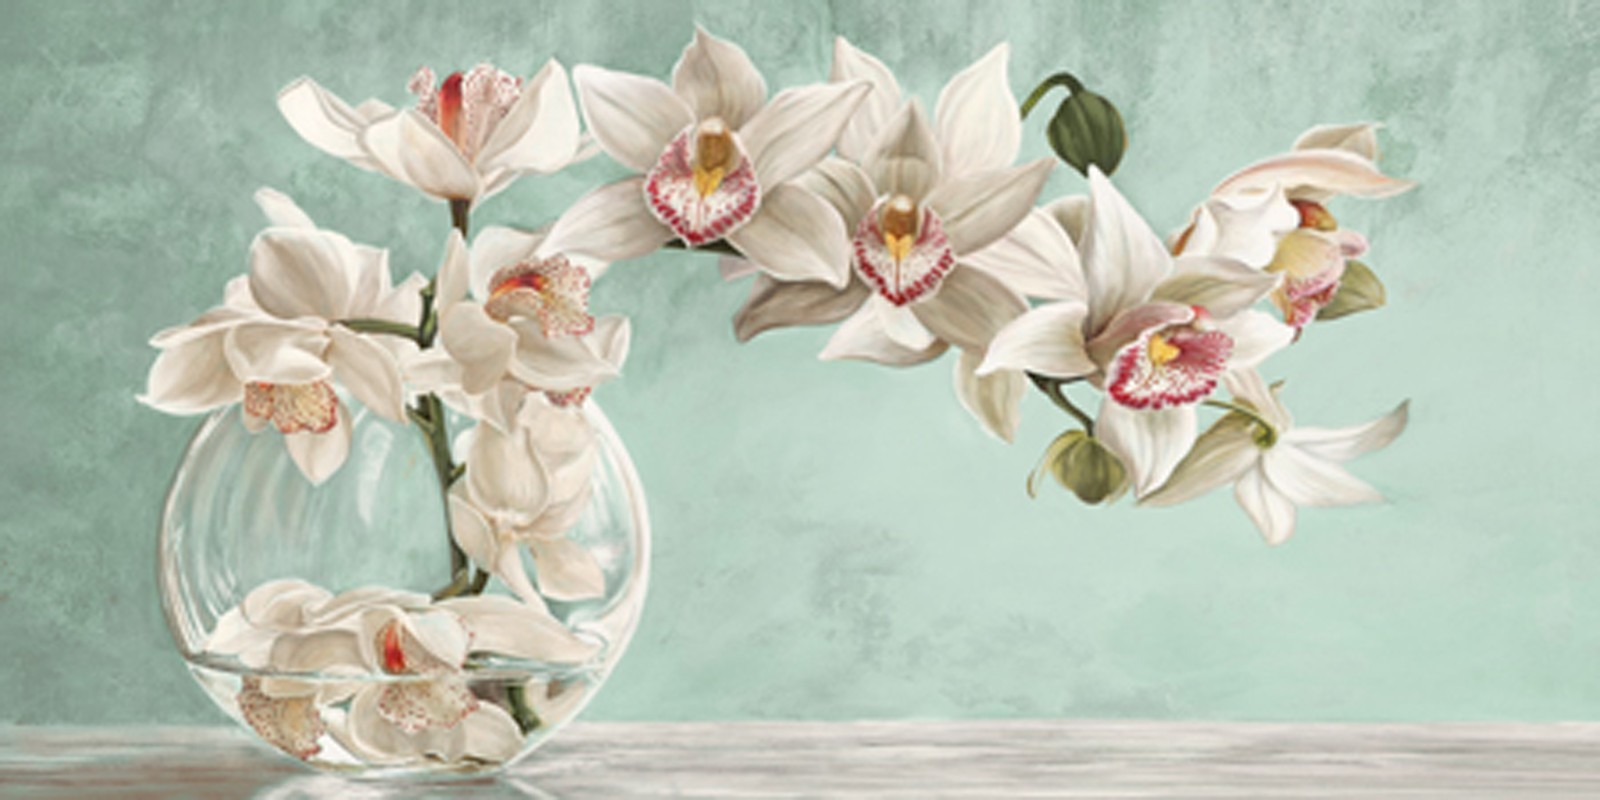 Remy Dellal - Orchid Arrangement II (Celadon)